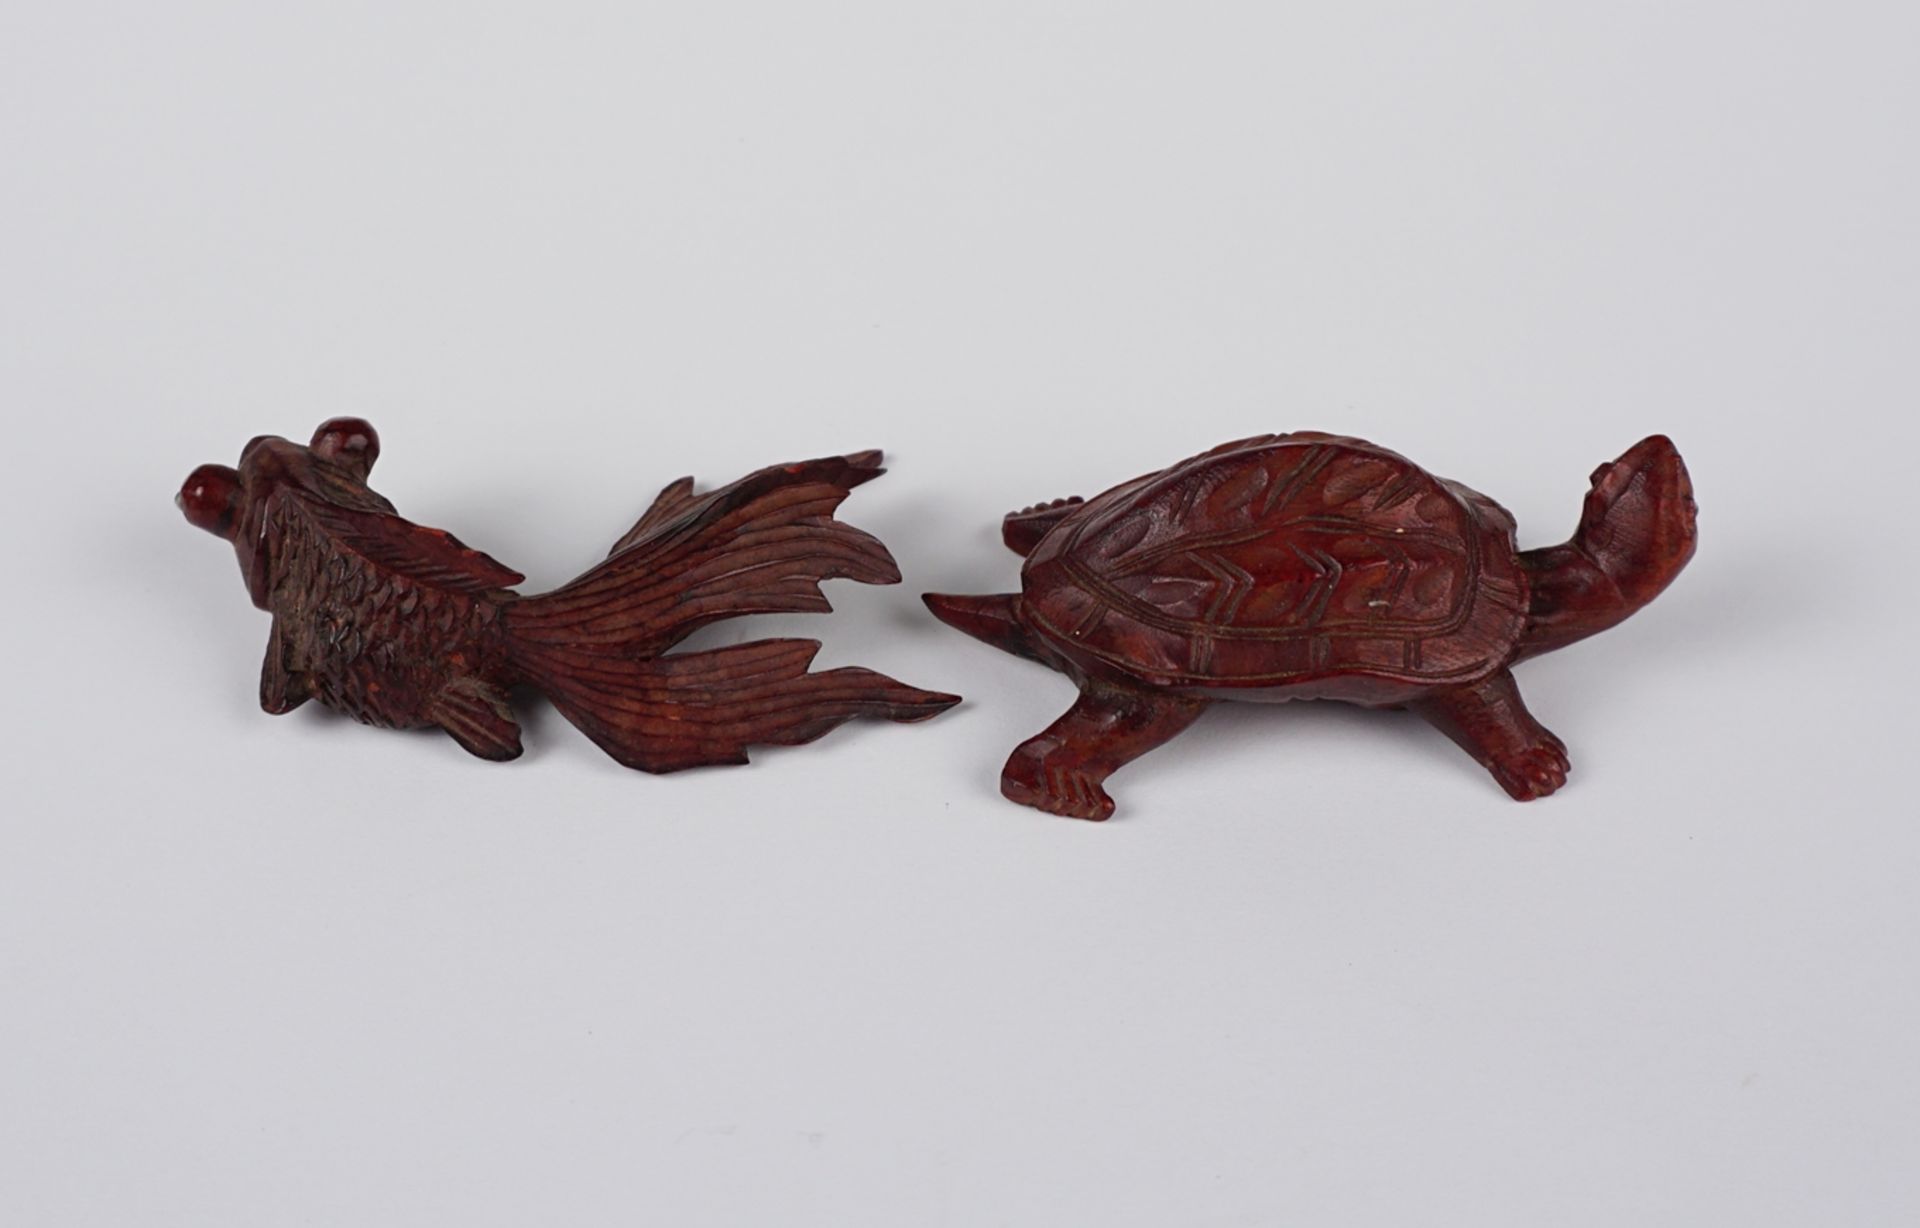 Fisch und Schildkröte, Holz geschnitzt, Asien - Image 2 of 2